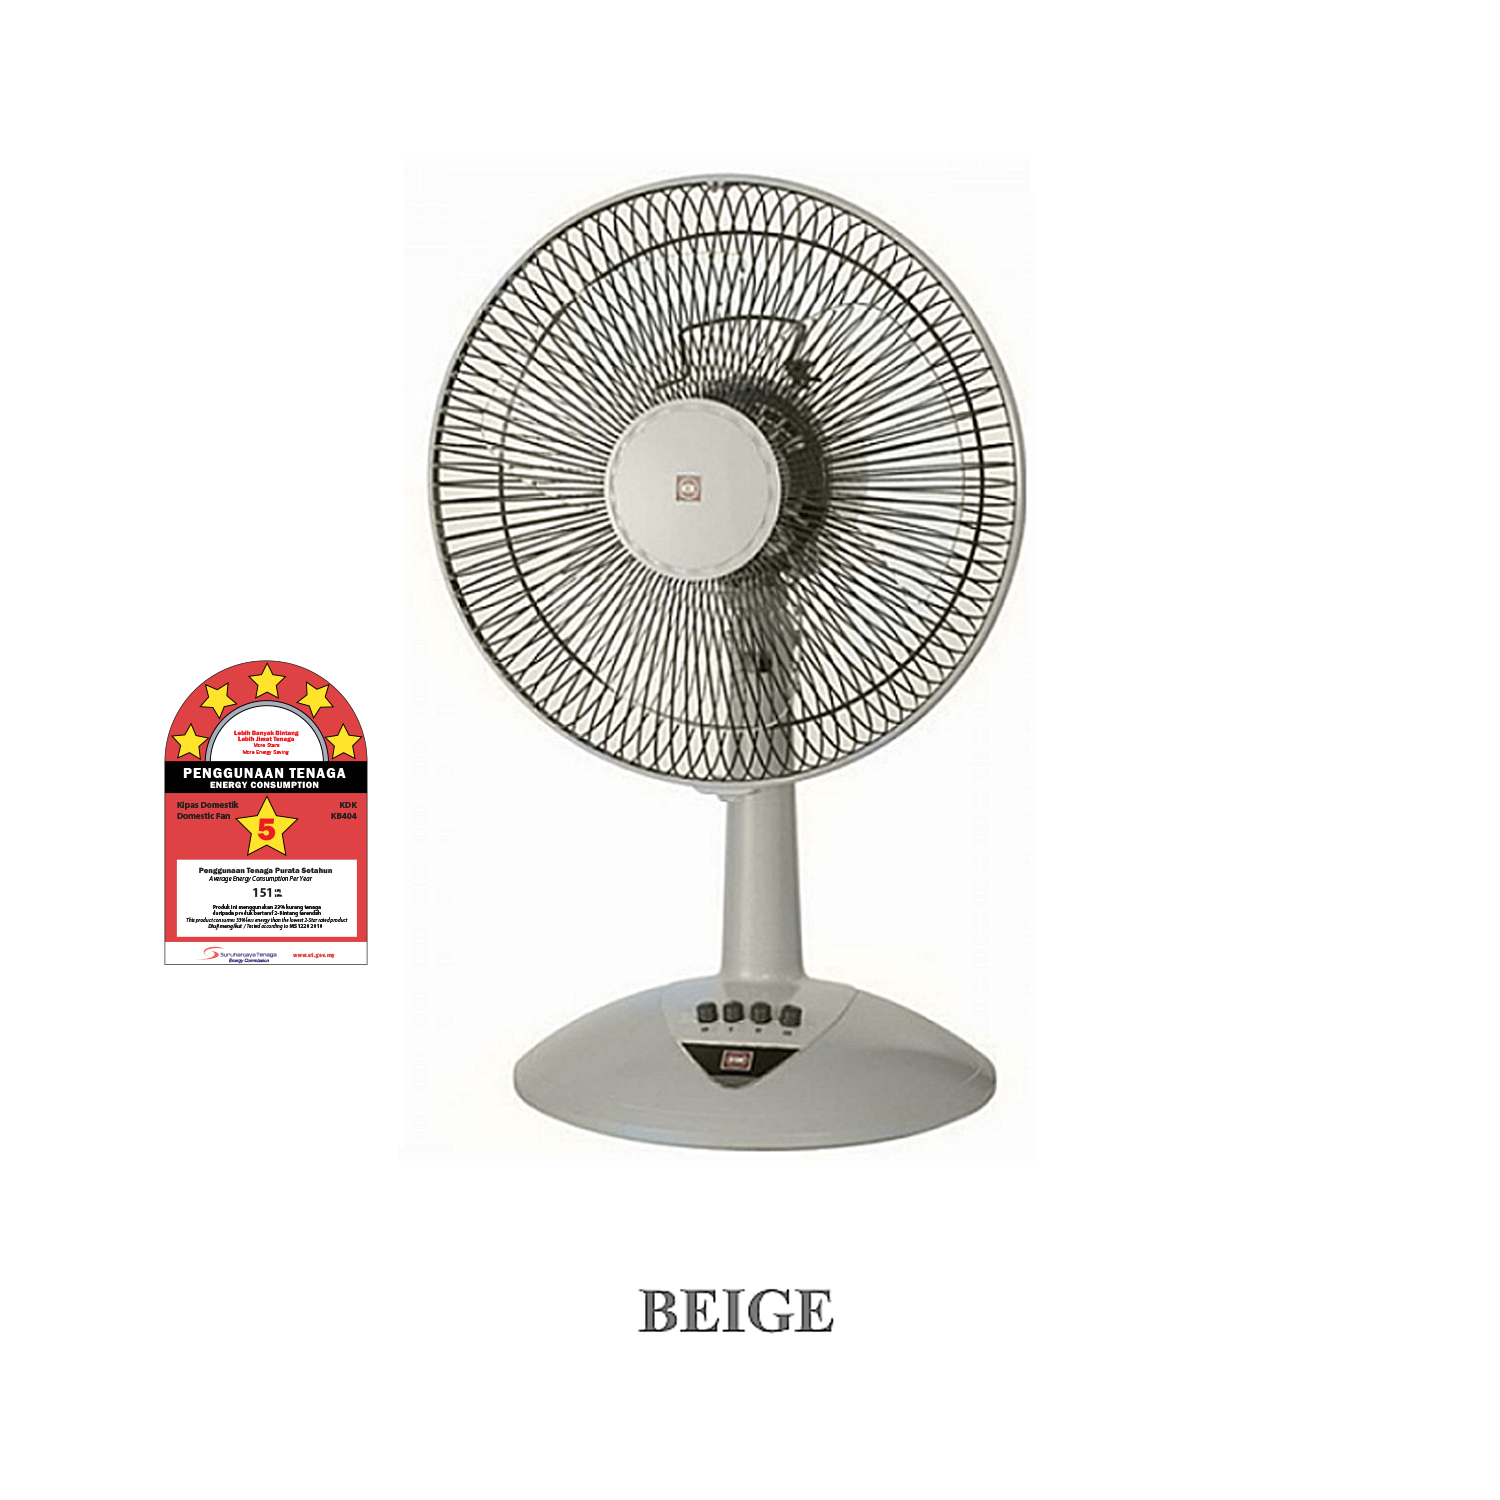 KDK Table Fan (16 inch) Biege - KB404BE/Blue - KB404AS/Red - KB404DE |  Shopee Malaysia